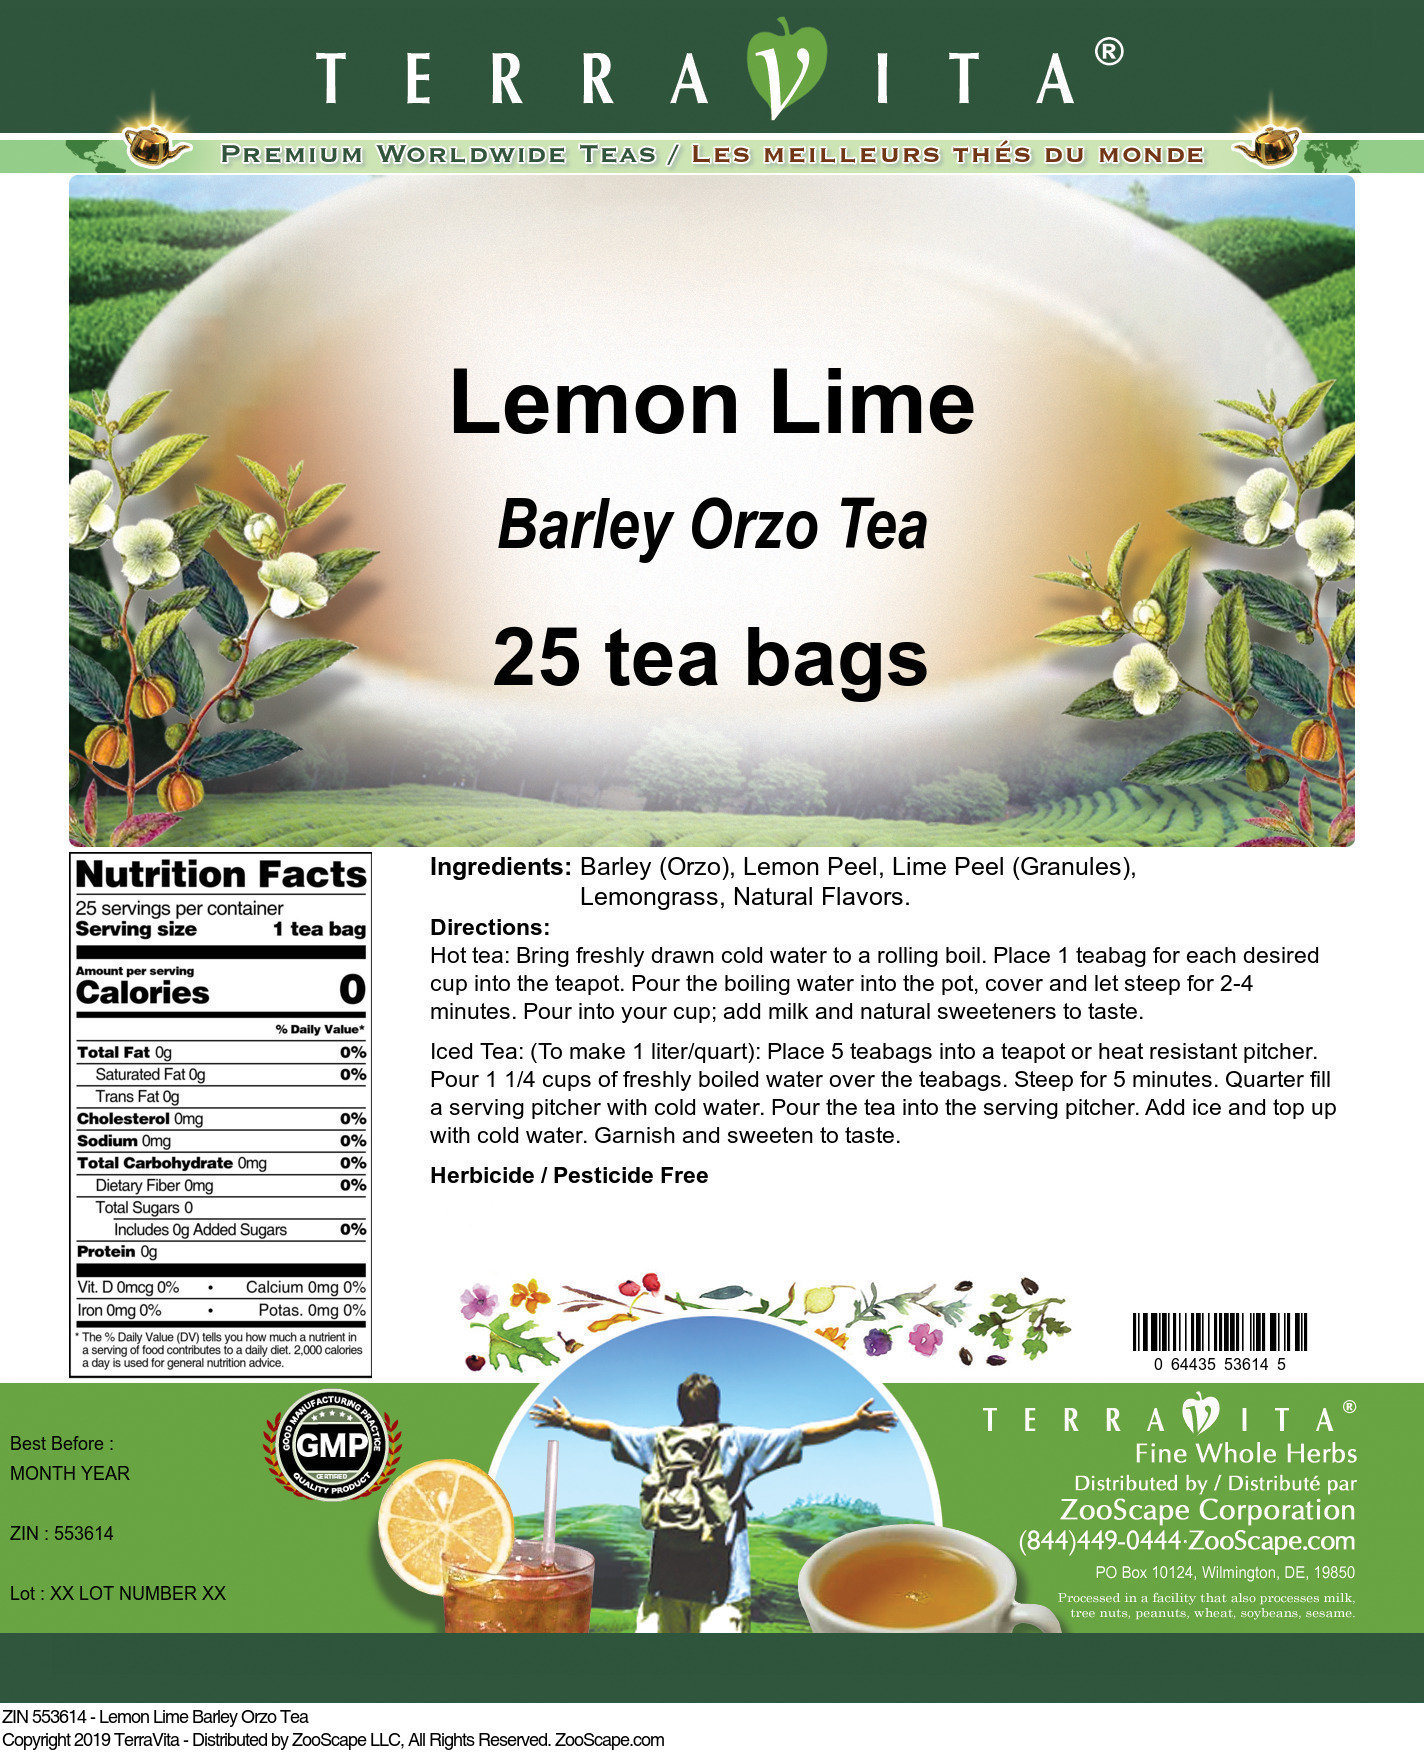 Lemon Lime Barley Orzo Tea - Label